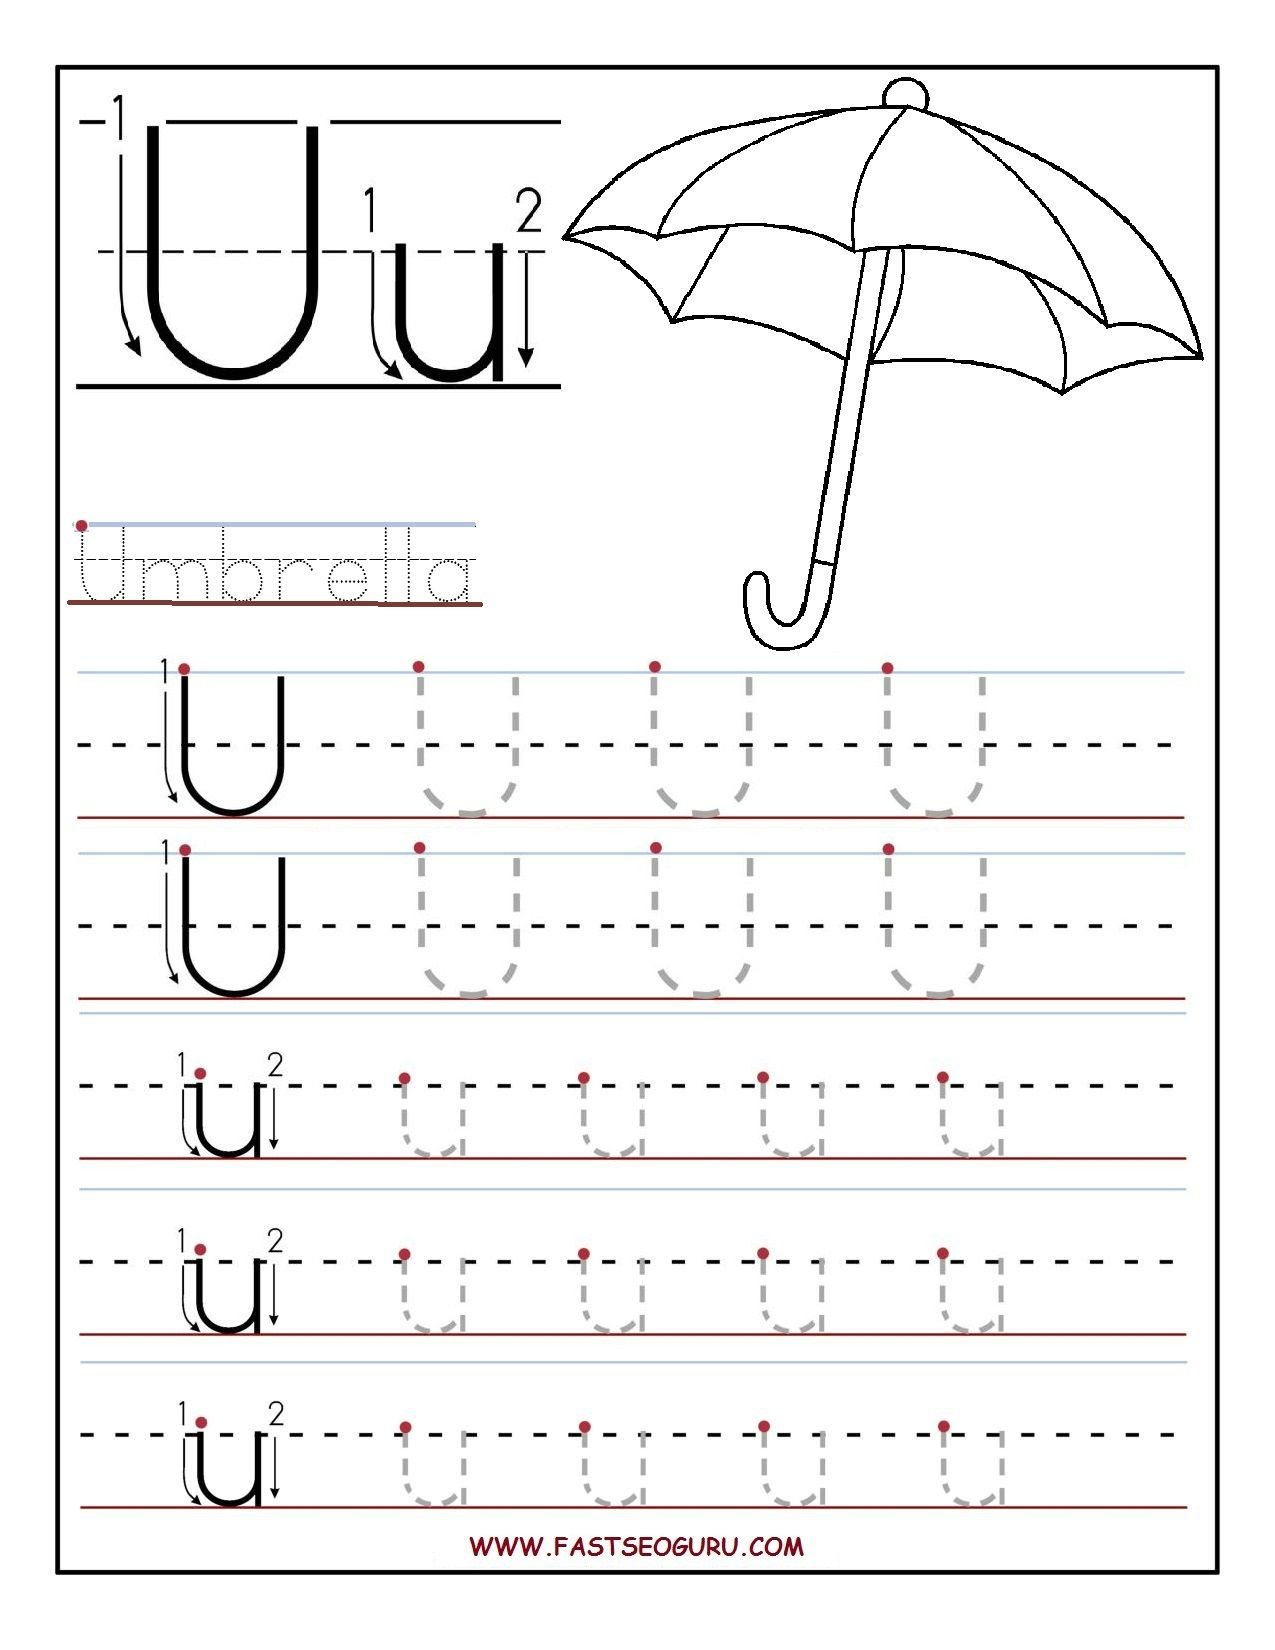 Printable Letter U Tracing Worksheets For Preschool inside Letter U Tracing Worksheet Free